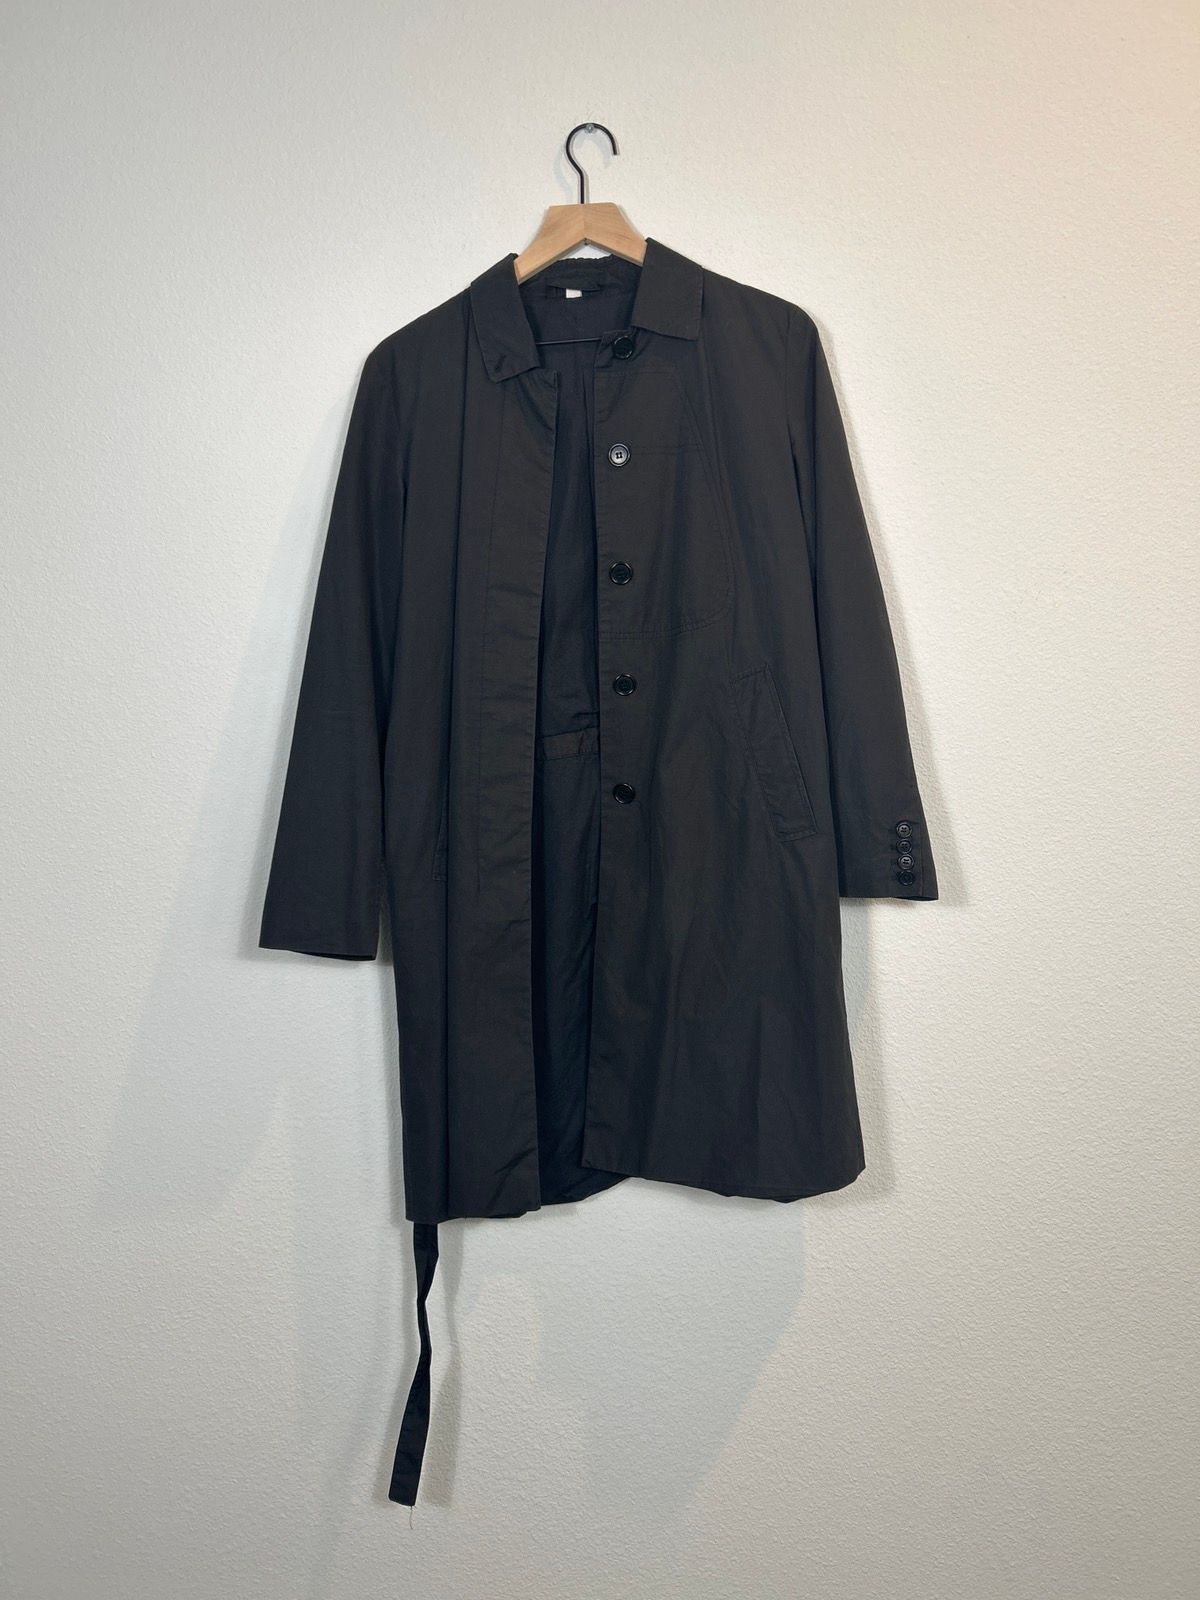 Pre-owned Helmut Lang Len Lye Wavelength Mini Shorts In Black